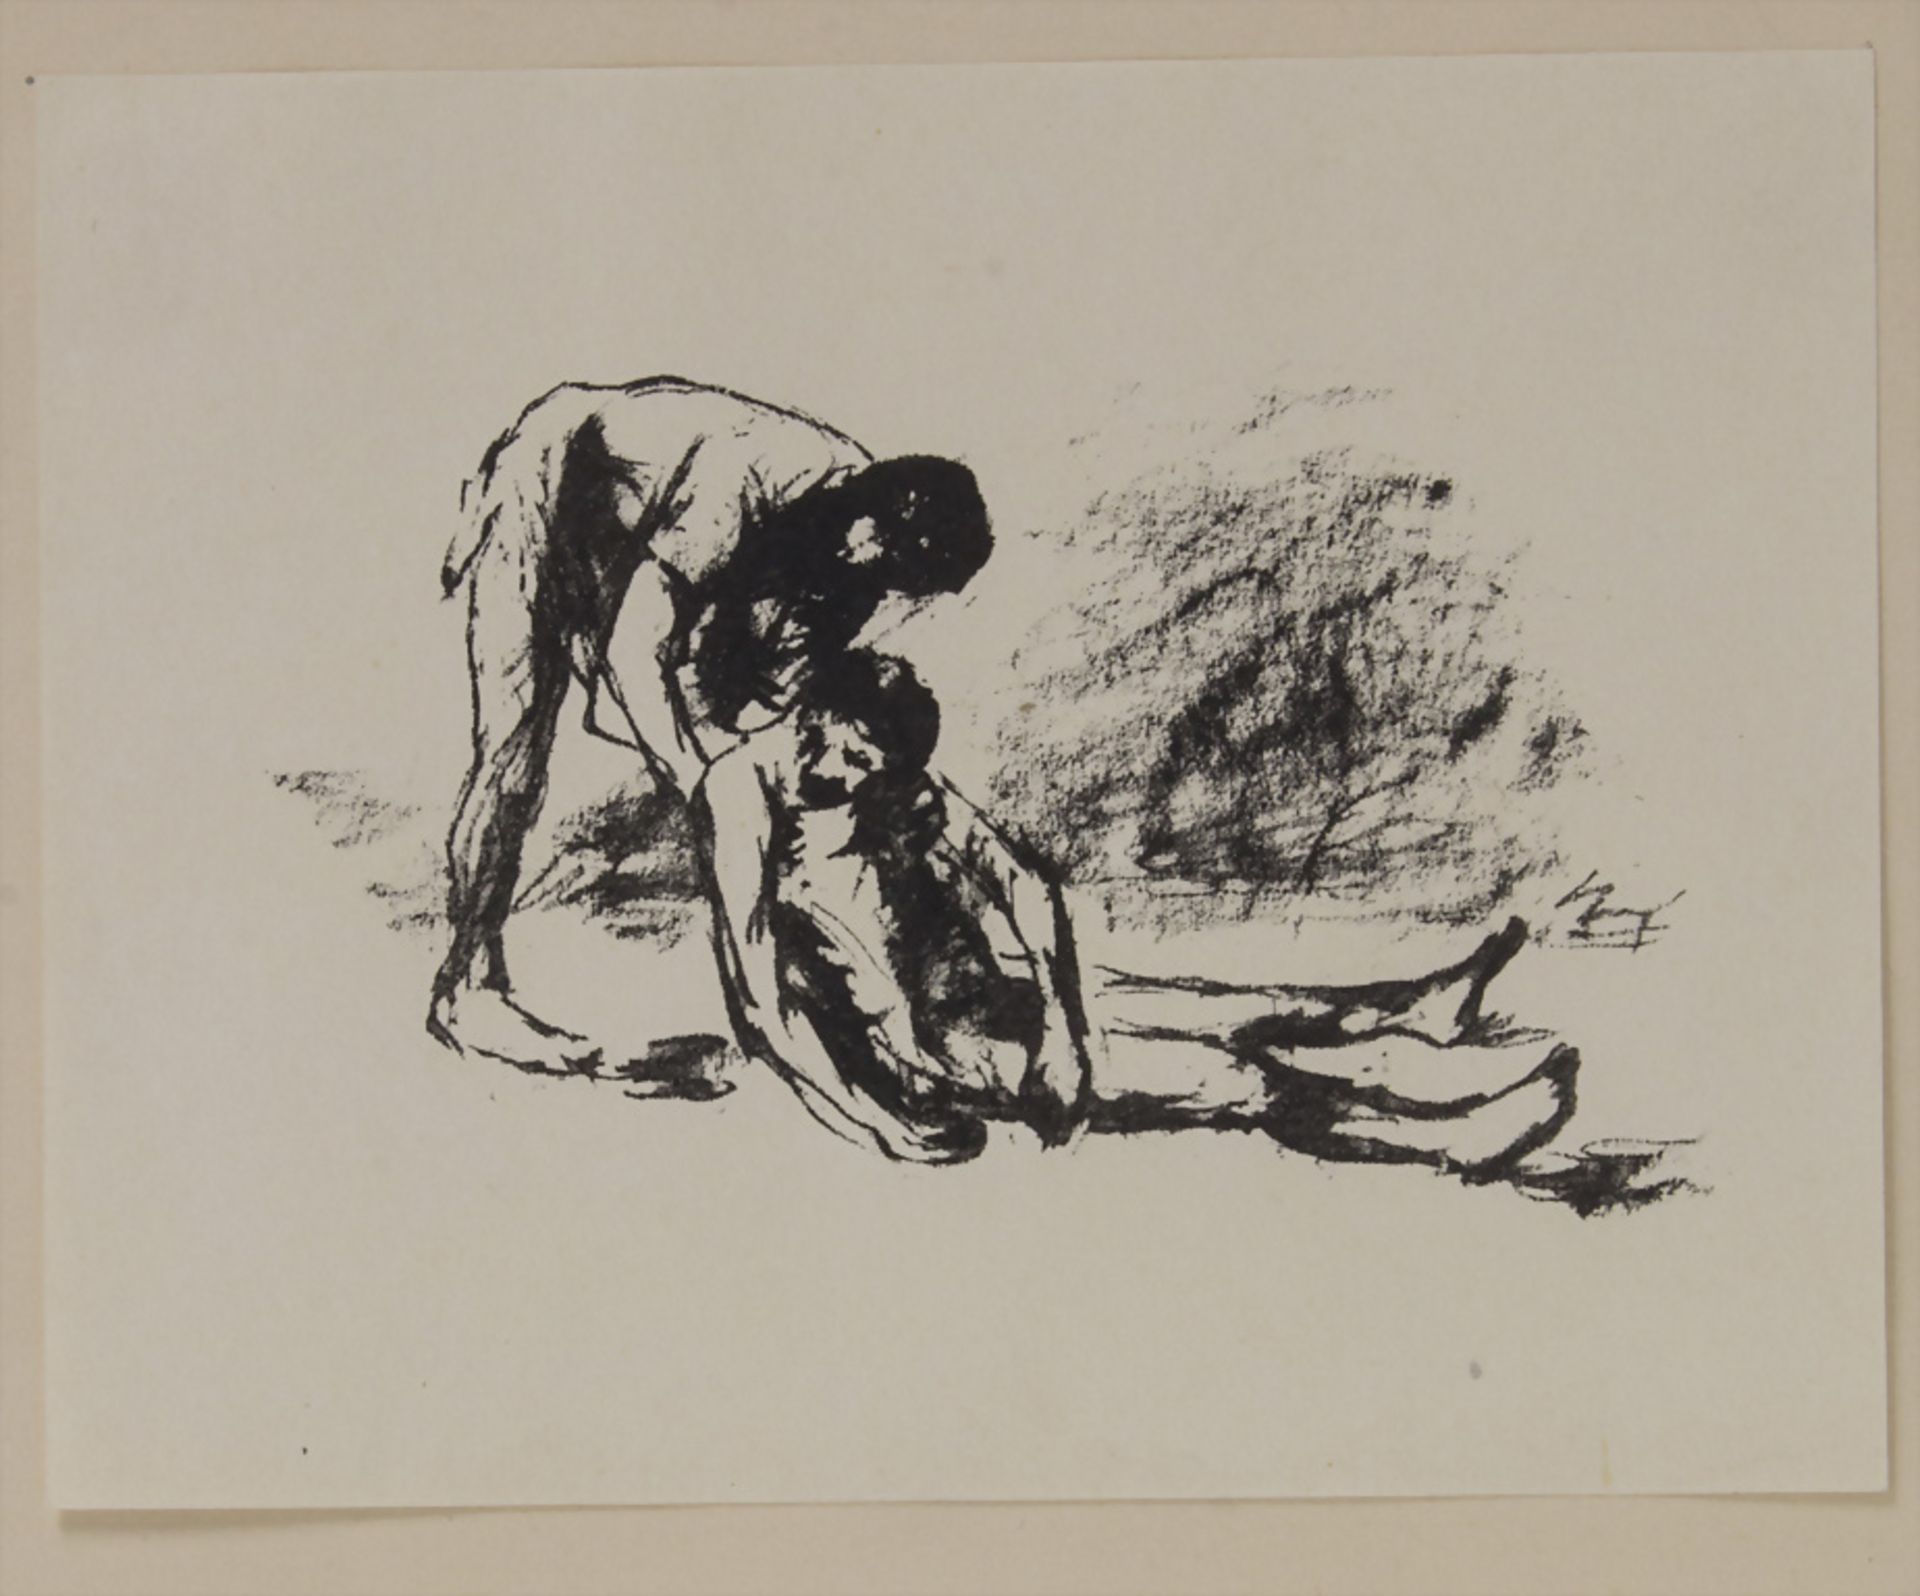 Max Slevogt (1868-1932), 'Mann schleift einen anderen über den Boden' / 'A man dragging ...